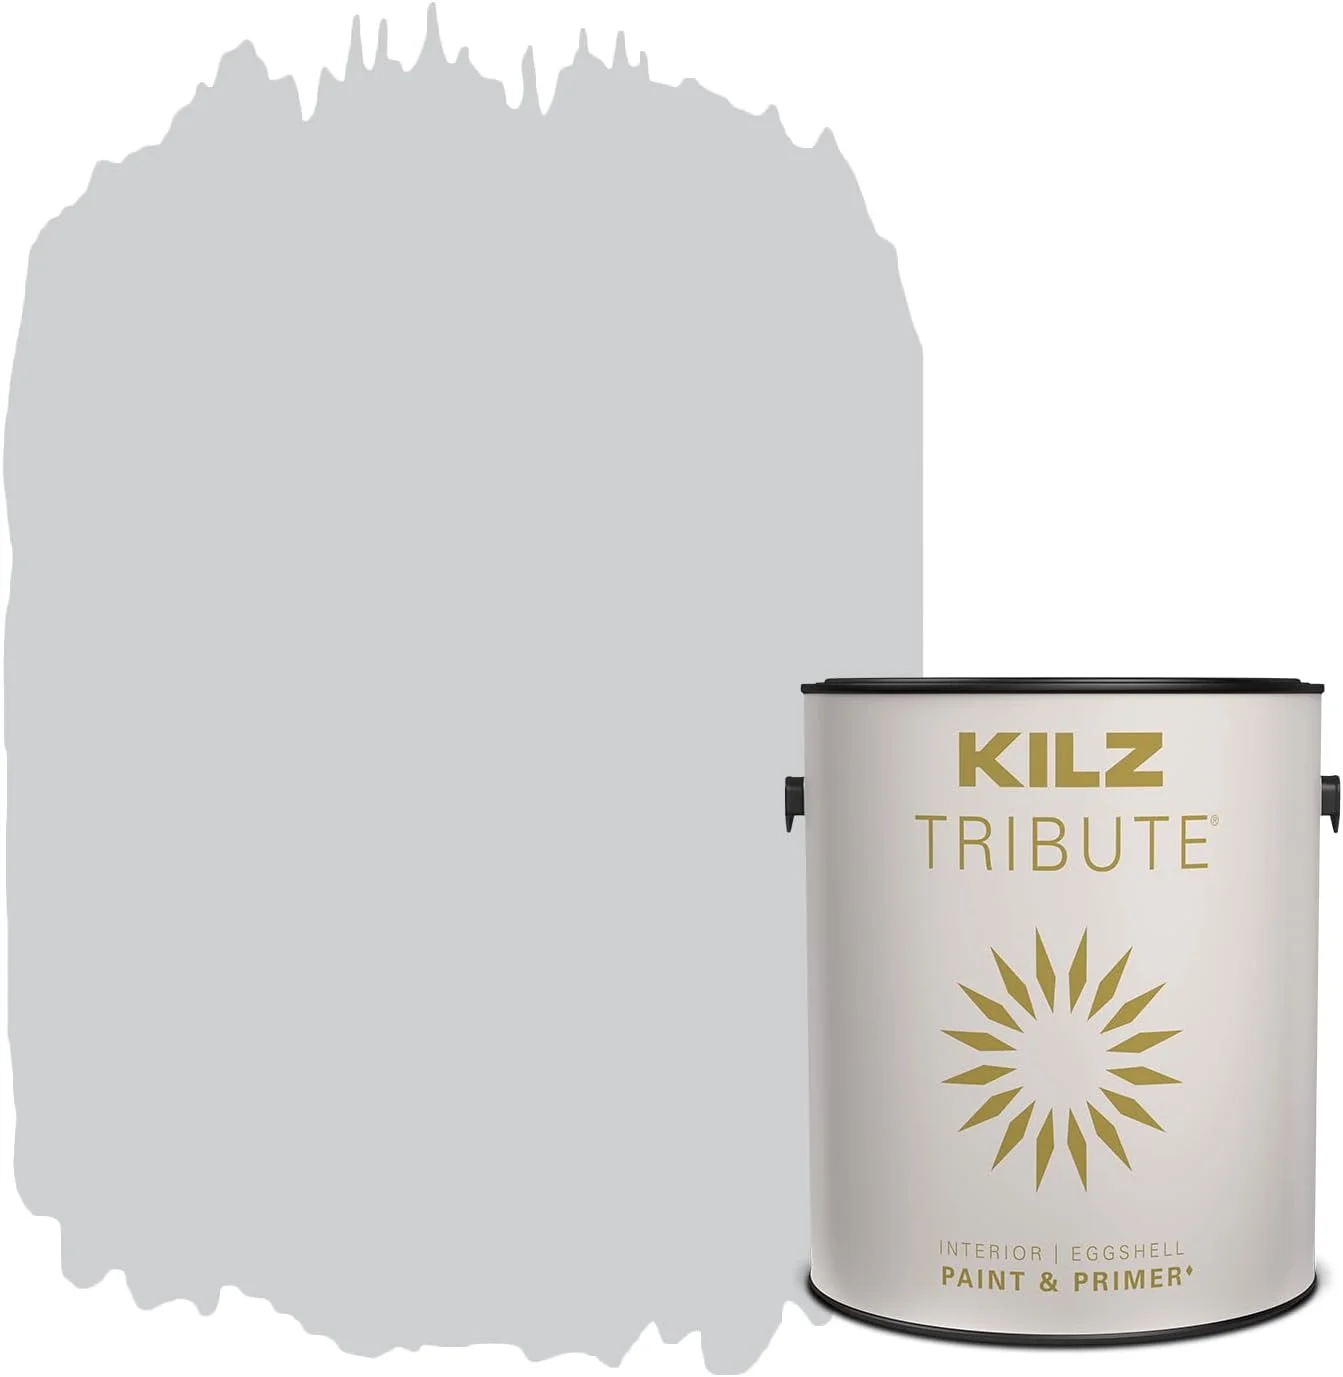 KILZ TRIBUTE Paint  Primer, Interior, Eggshell, Brushed Metal, 1 Gallon